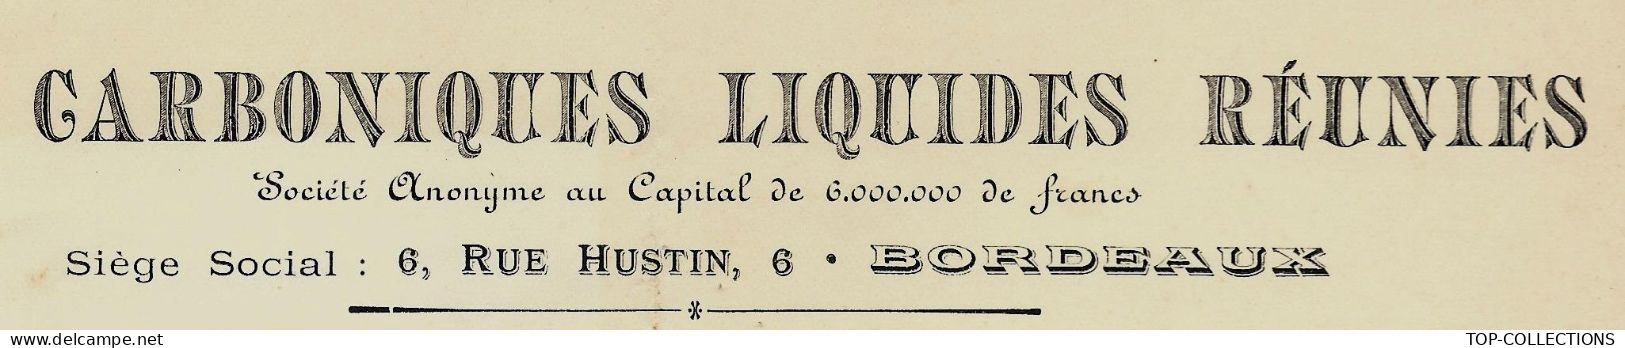 1913 INDUSTRIE FACTURE  ENTETE LES CARBONIQUES LIQUIDES REUNIES Bordeaux V.SCANS+HISTORIQUE - 1900 – 1949